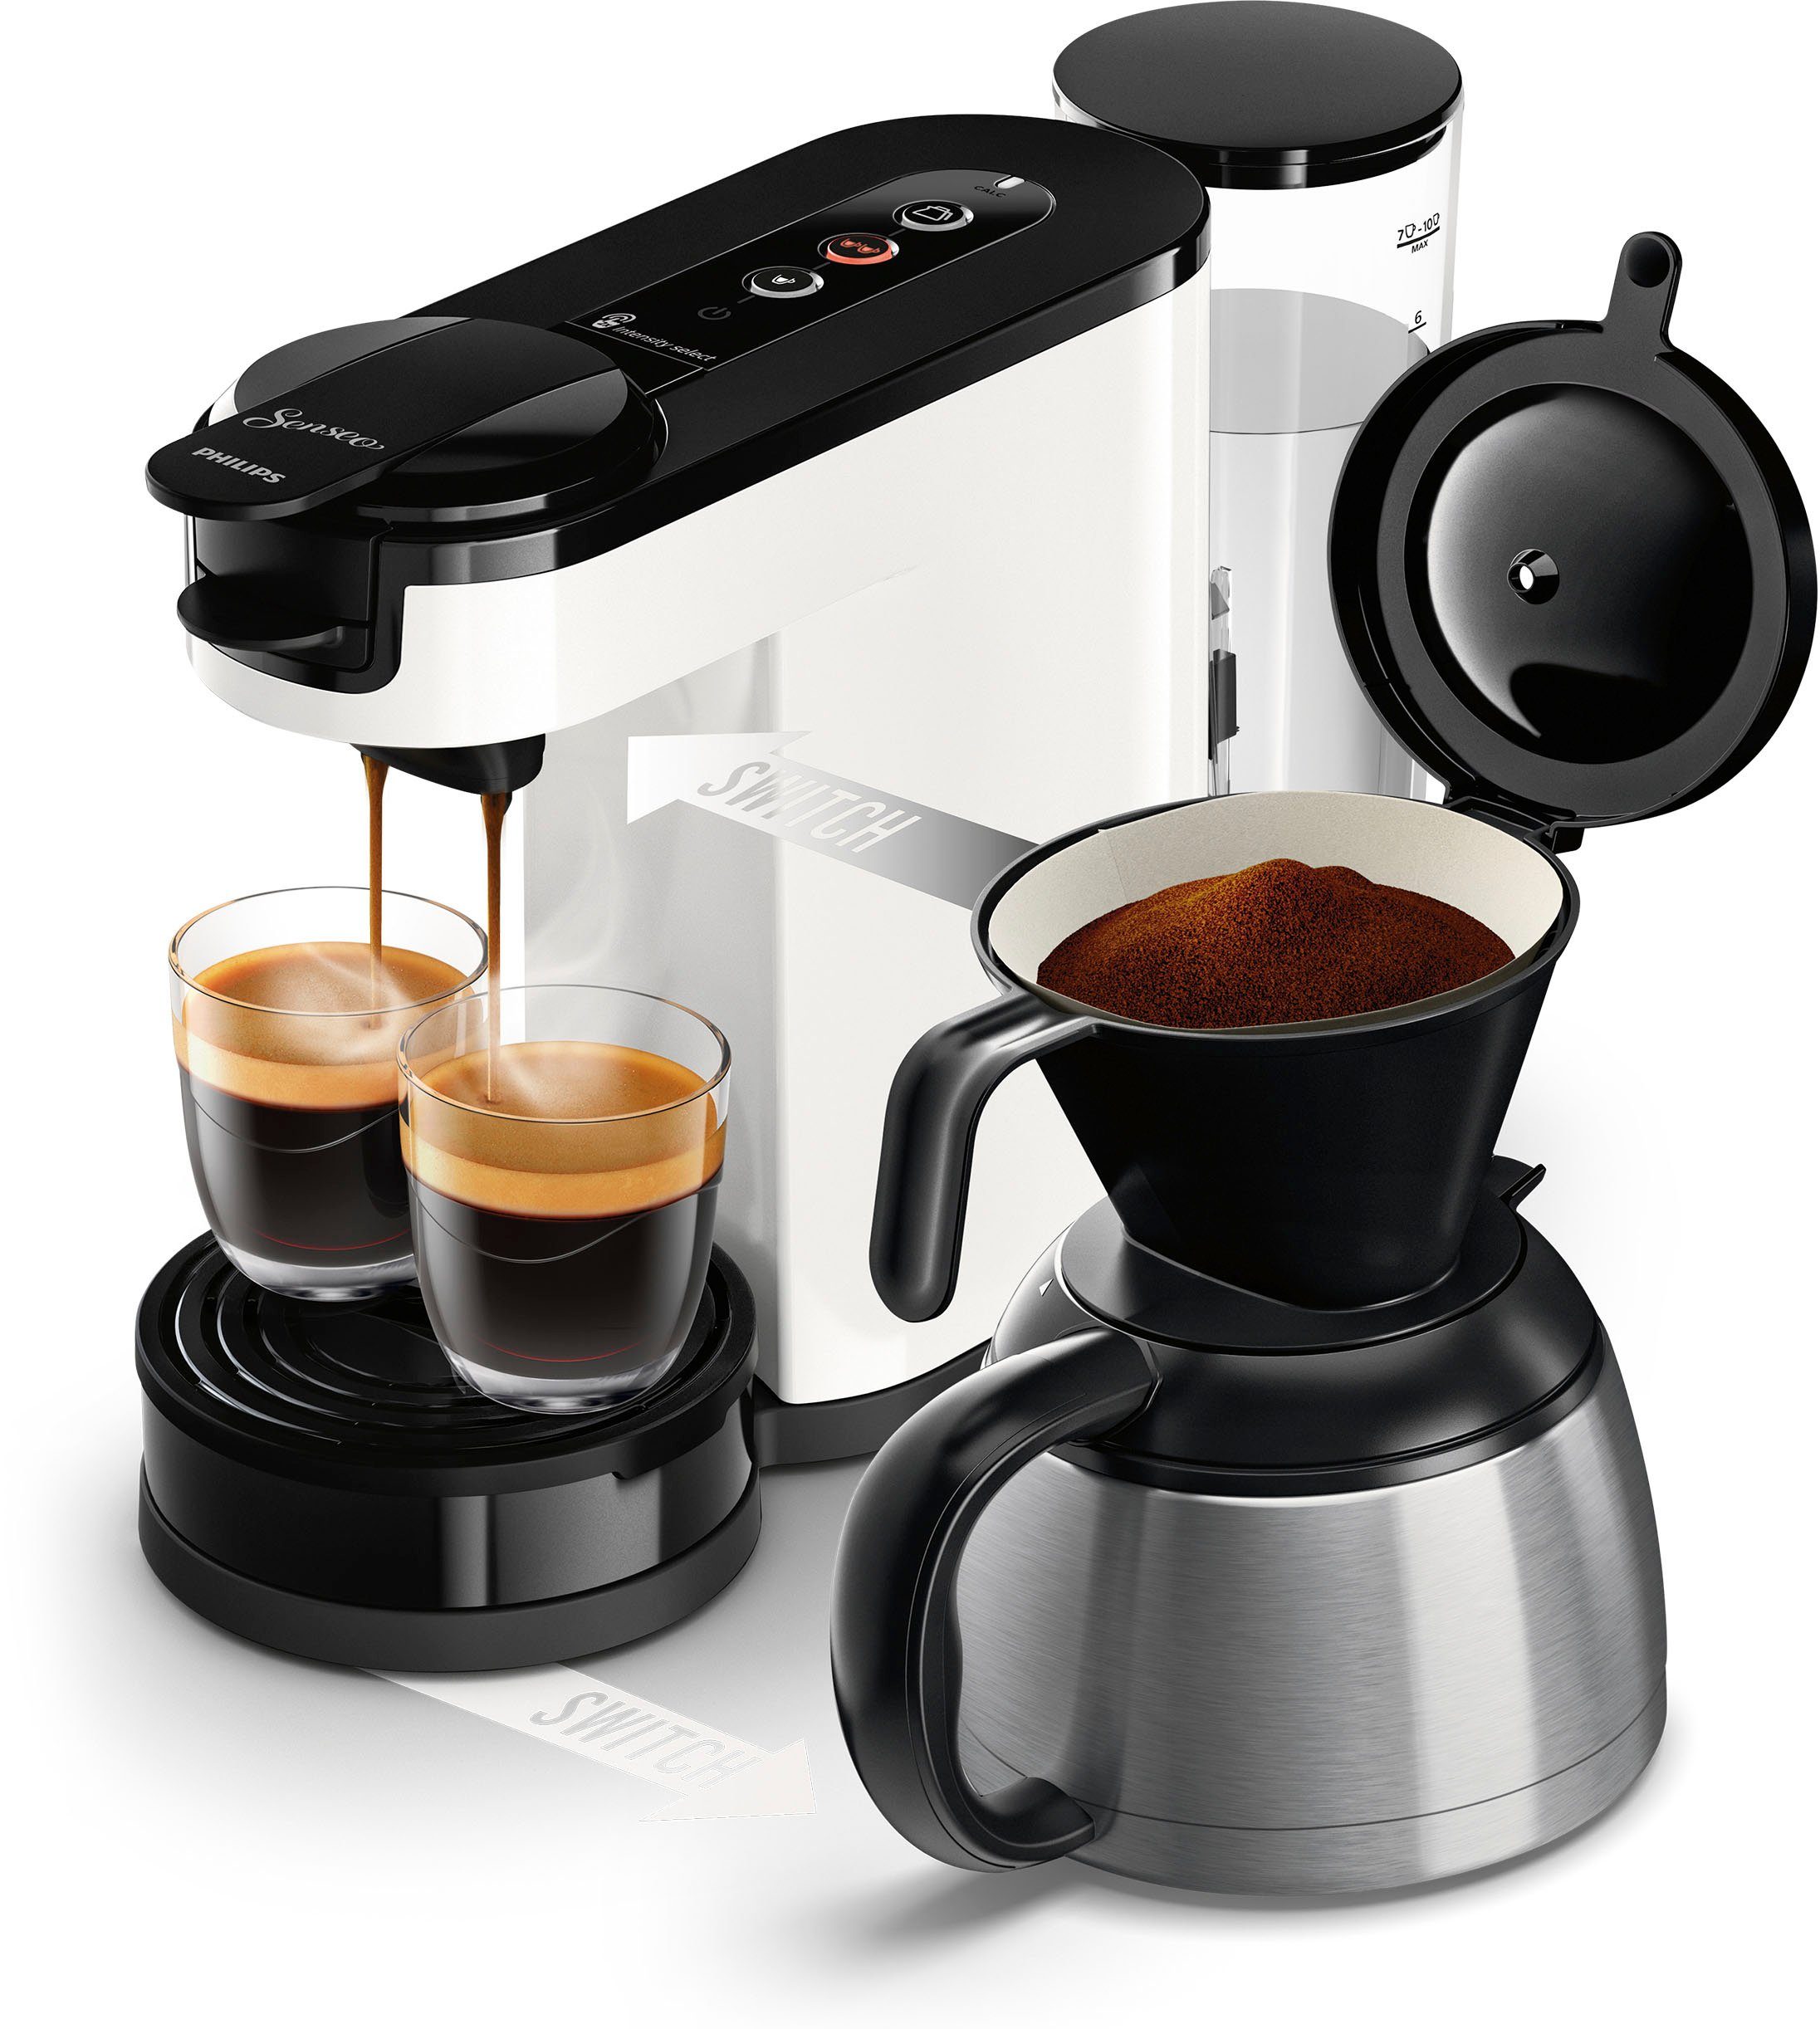 Senseo im 9,90 Wert UVP Switch Philips Kaffeepaddose HD6592/04, € Kaffeekanne, inkl. Kaffeepadmaschine von 1l